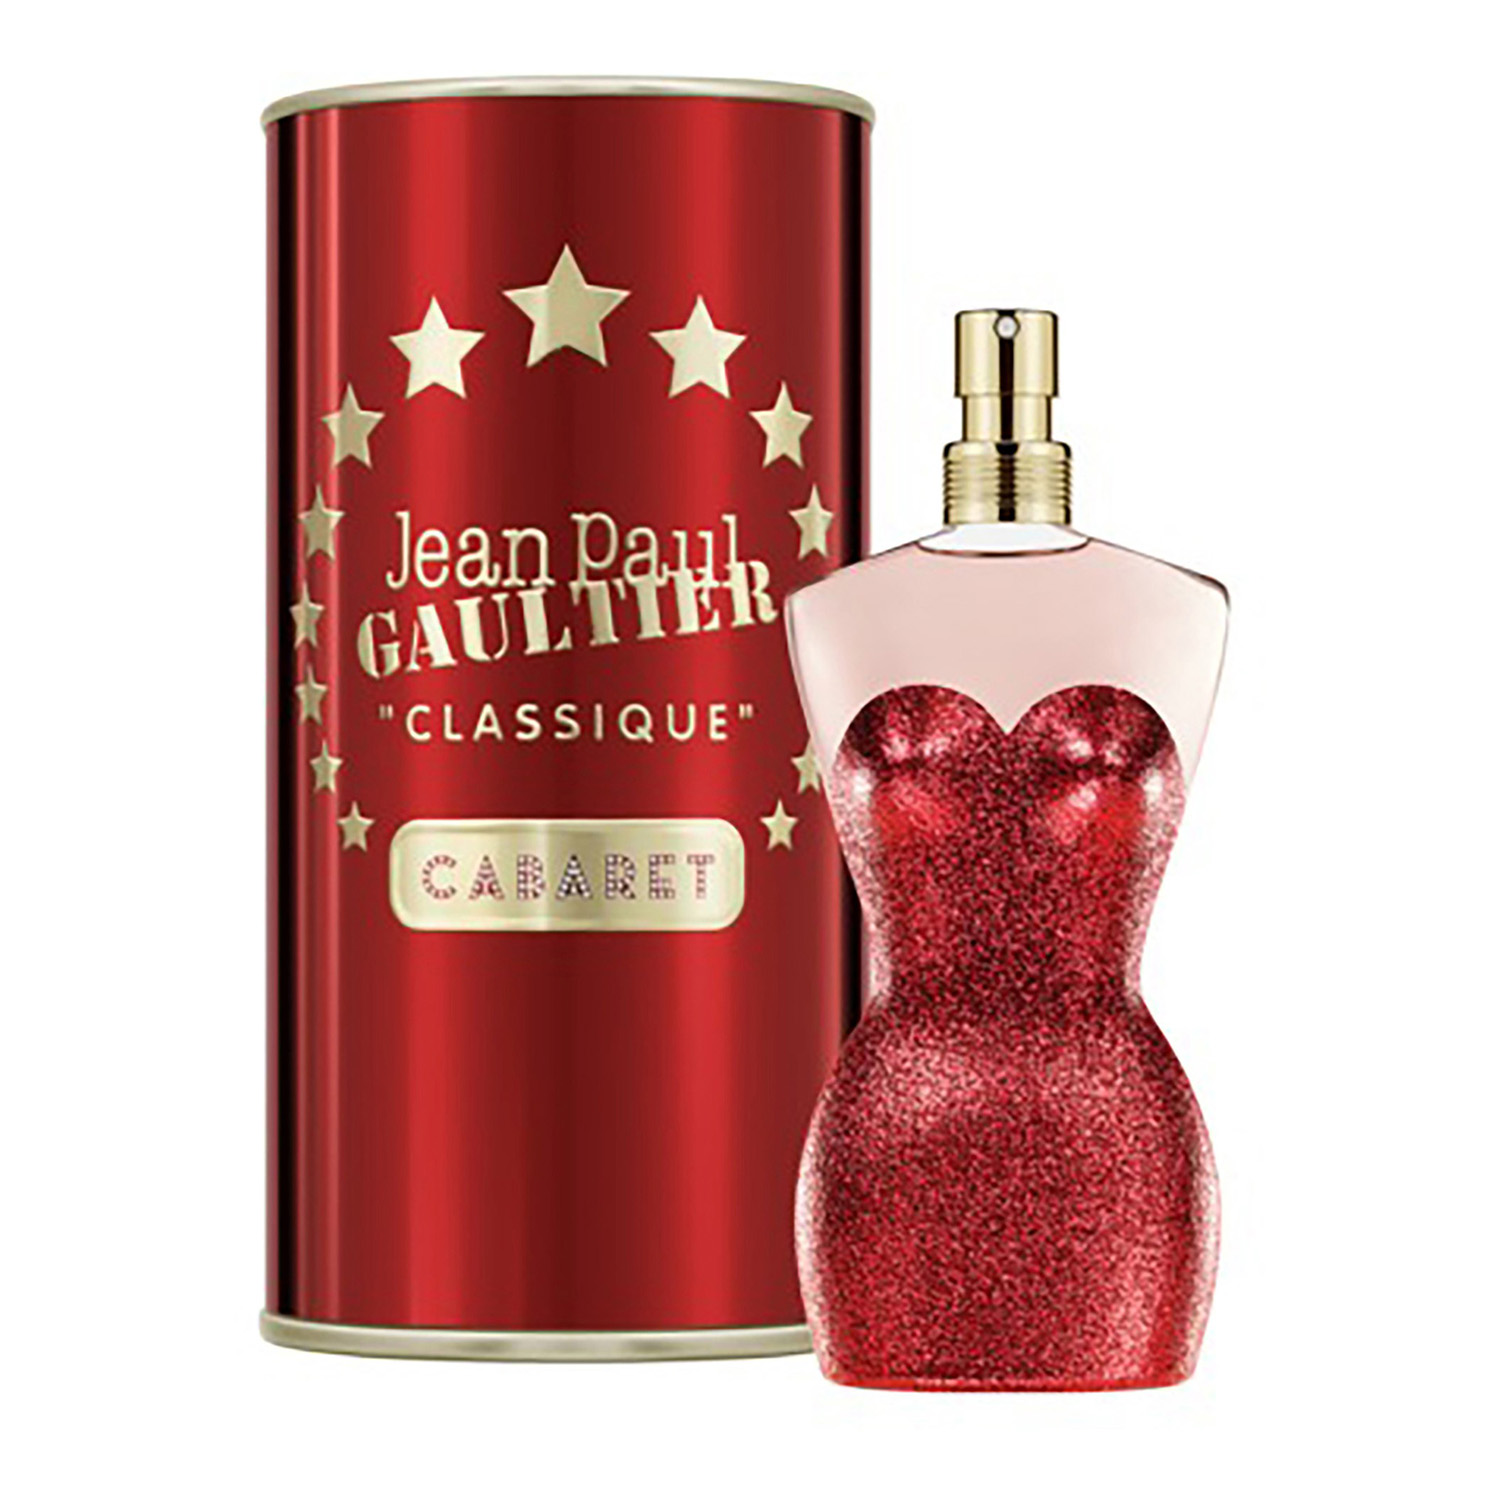 Jean Paul Gaultier Parfum - Homecare24